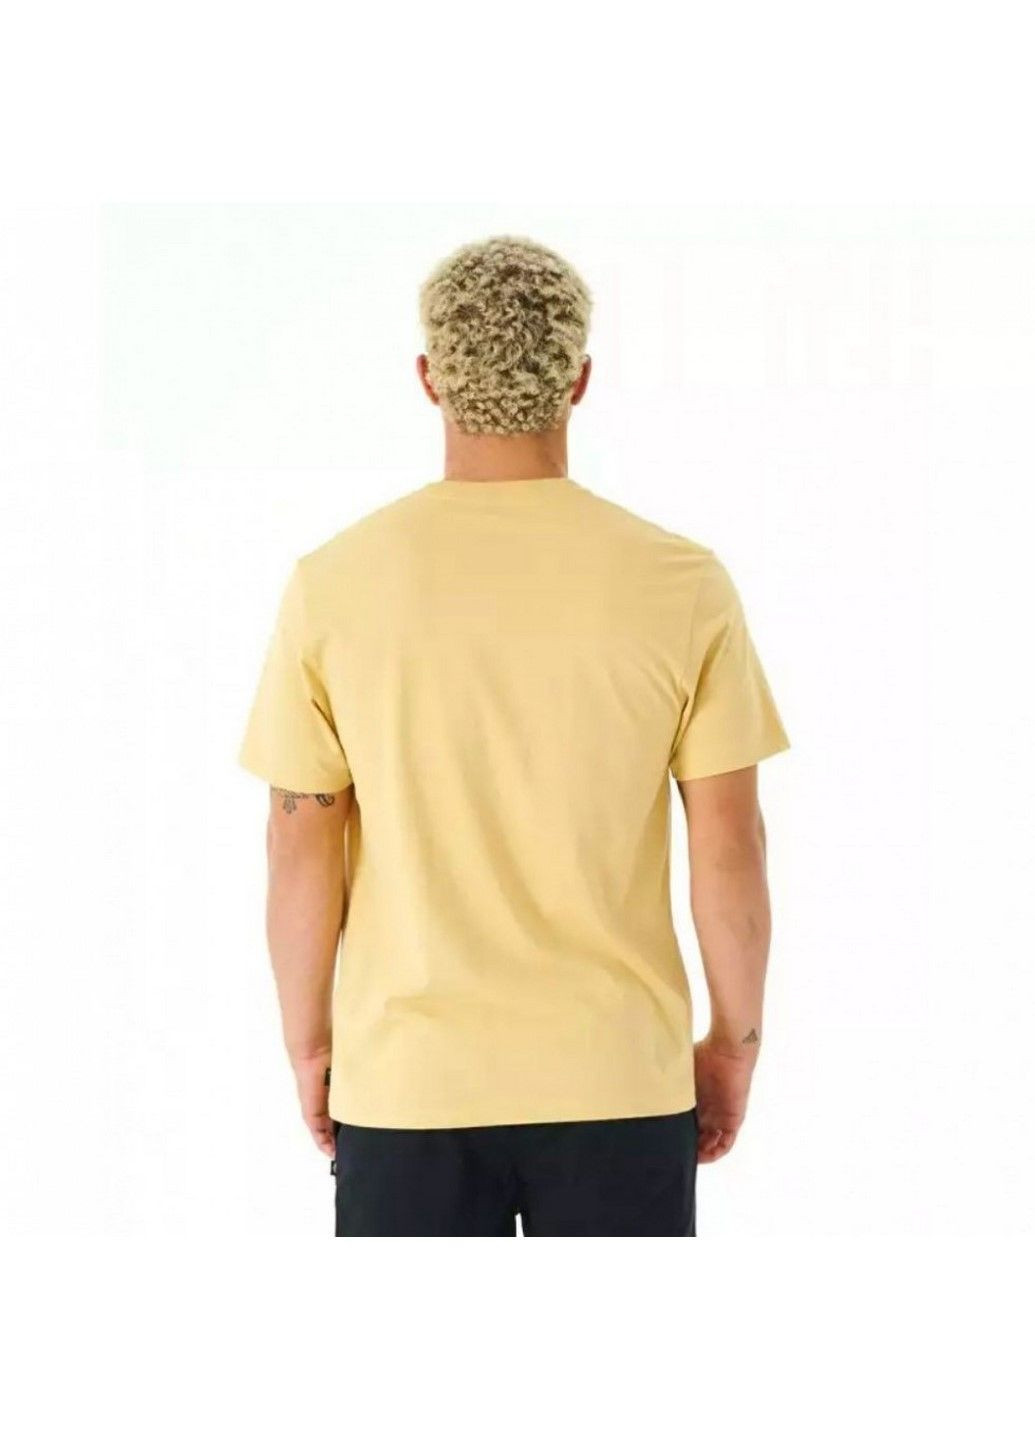 Желтая мужская футболка fill me up tee 03ymte-9746 Rip Curl